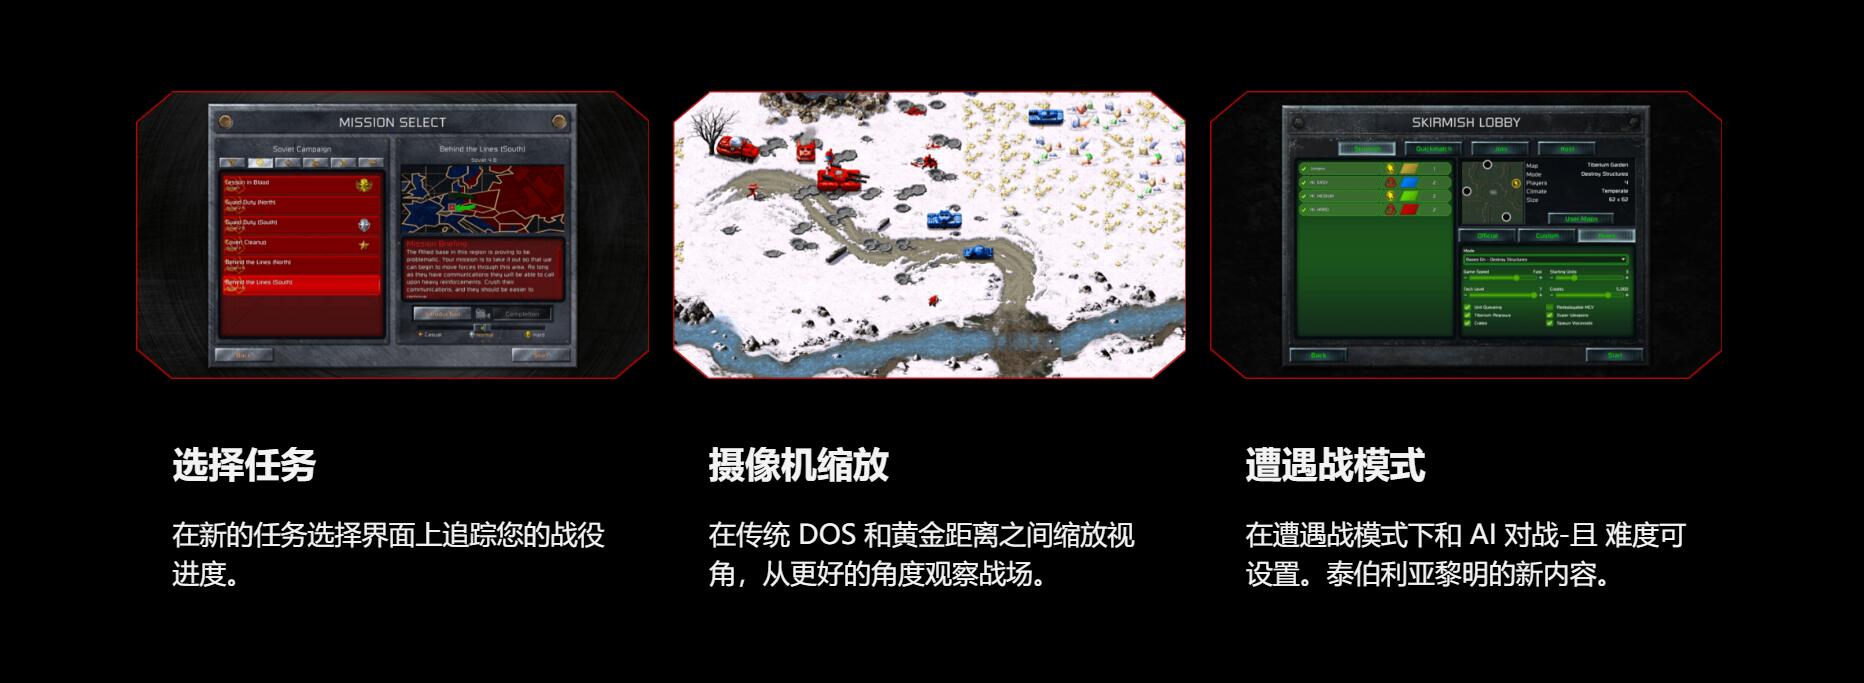 《命令与征服重制版》中文官网上线 实体收藏版介绍